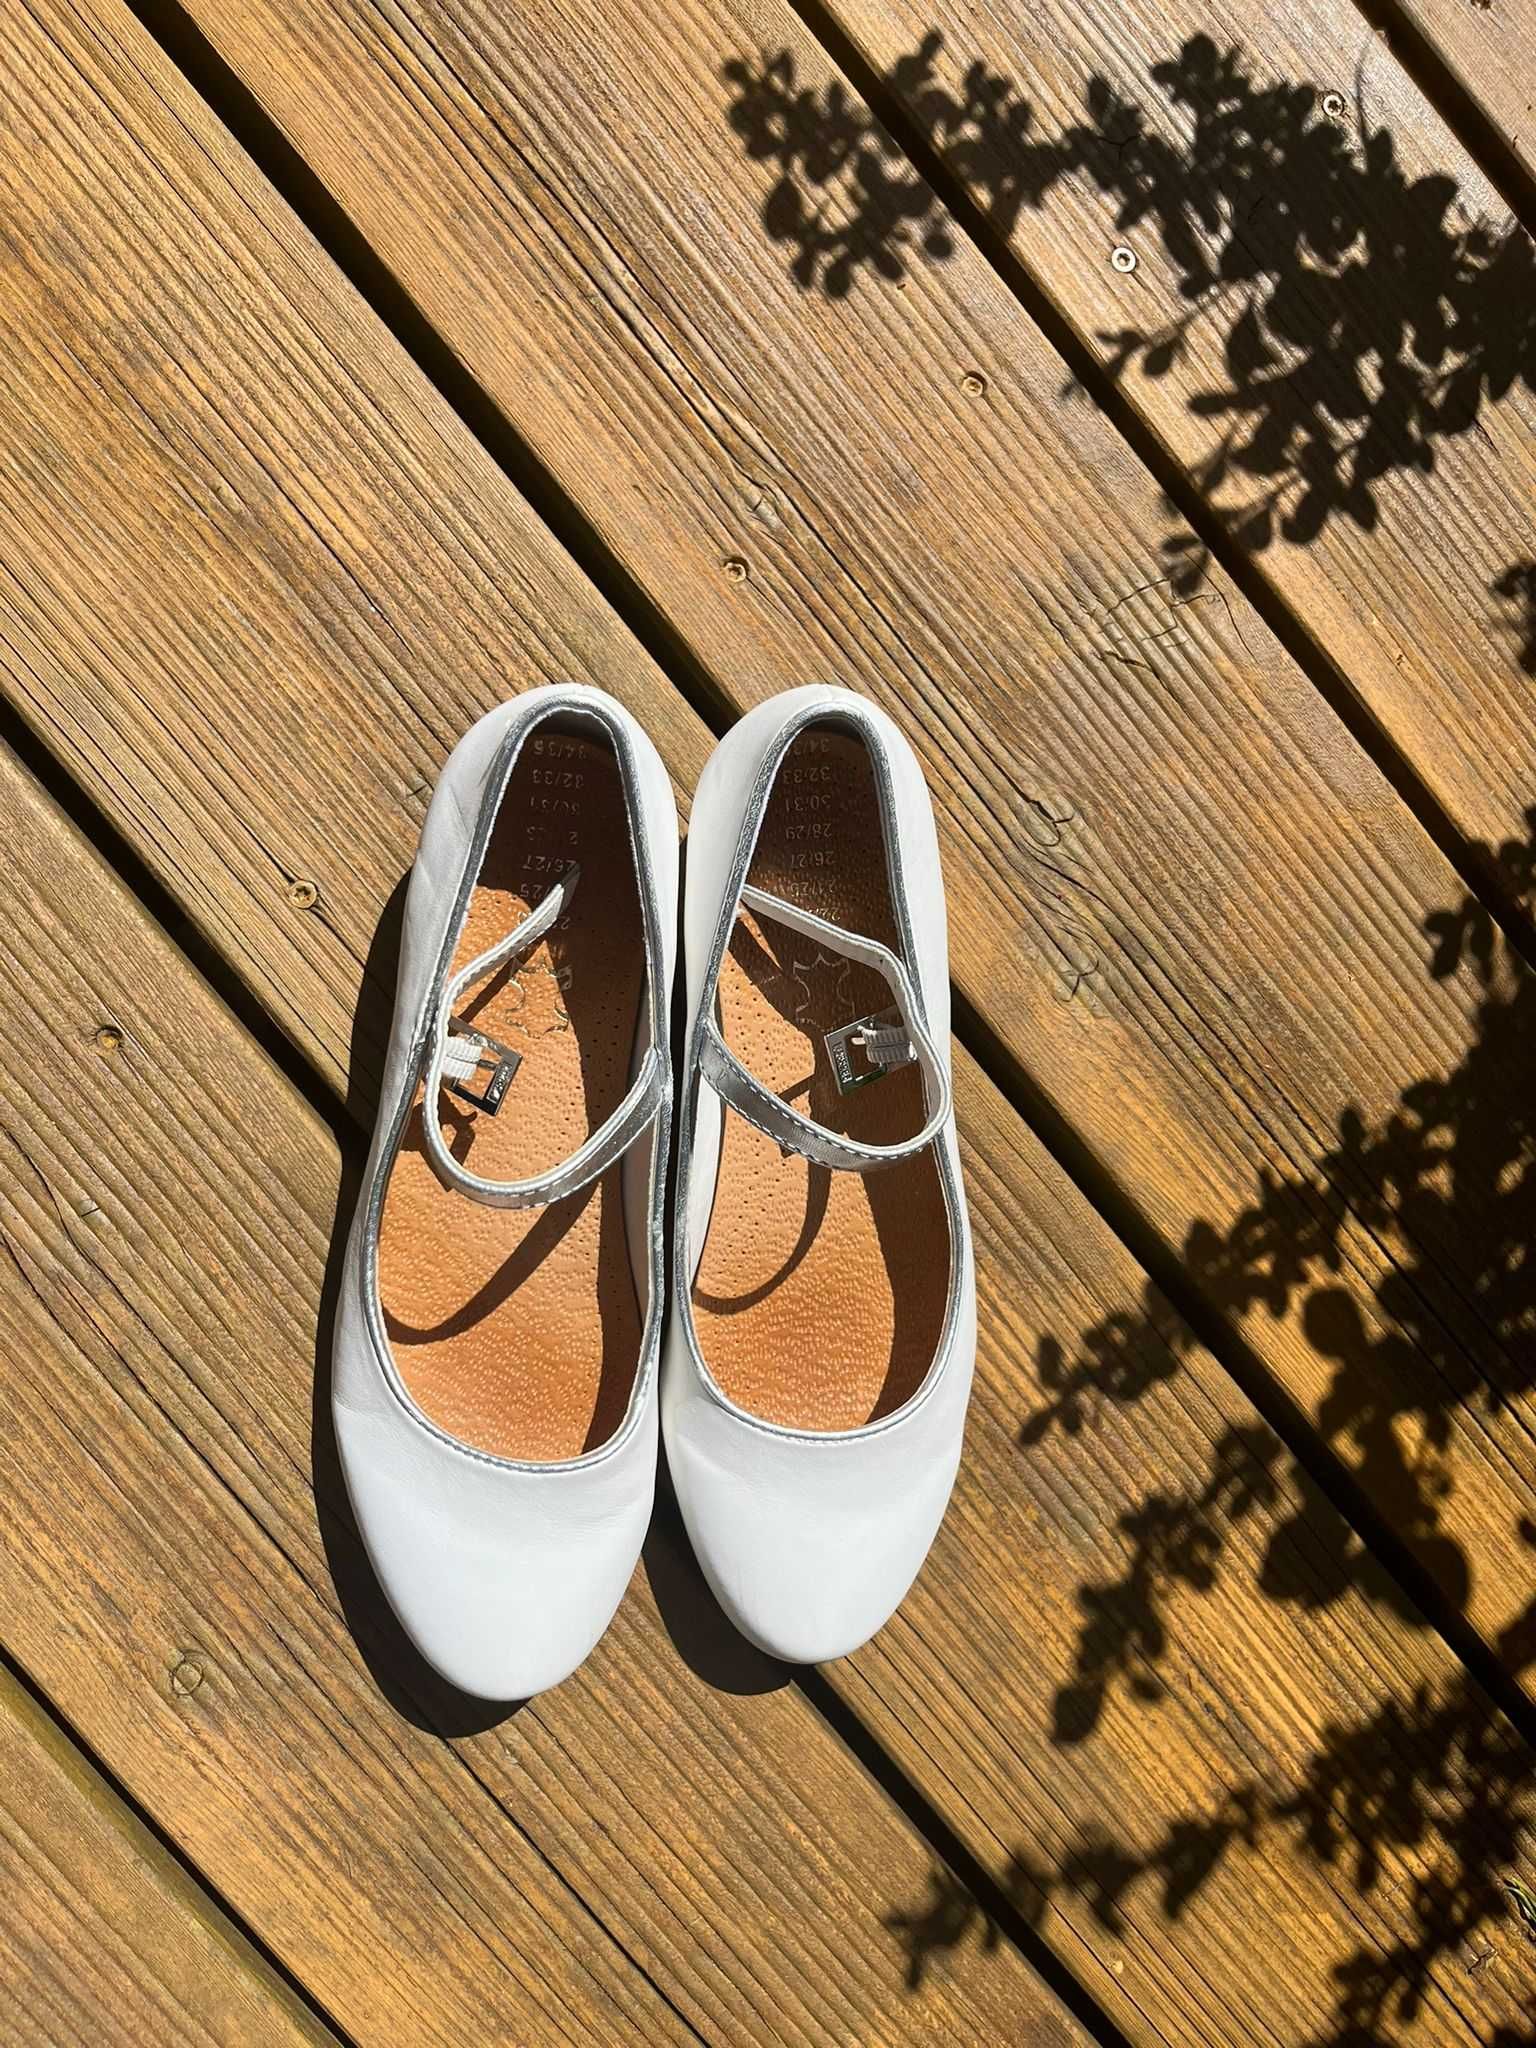 Buty białe dla dziewczynki komunia ślub rozm. 35